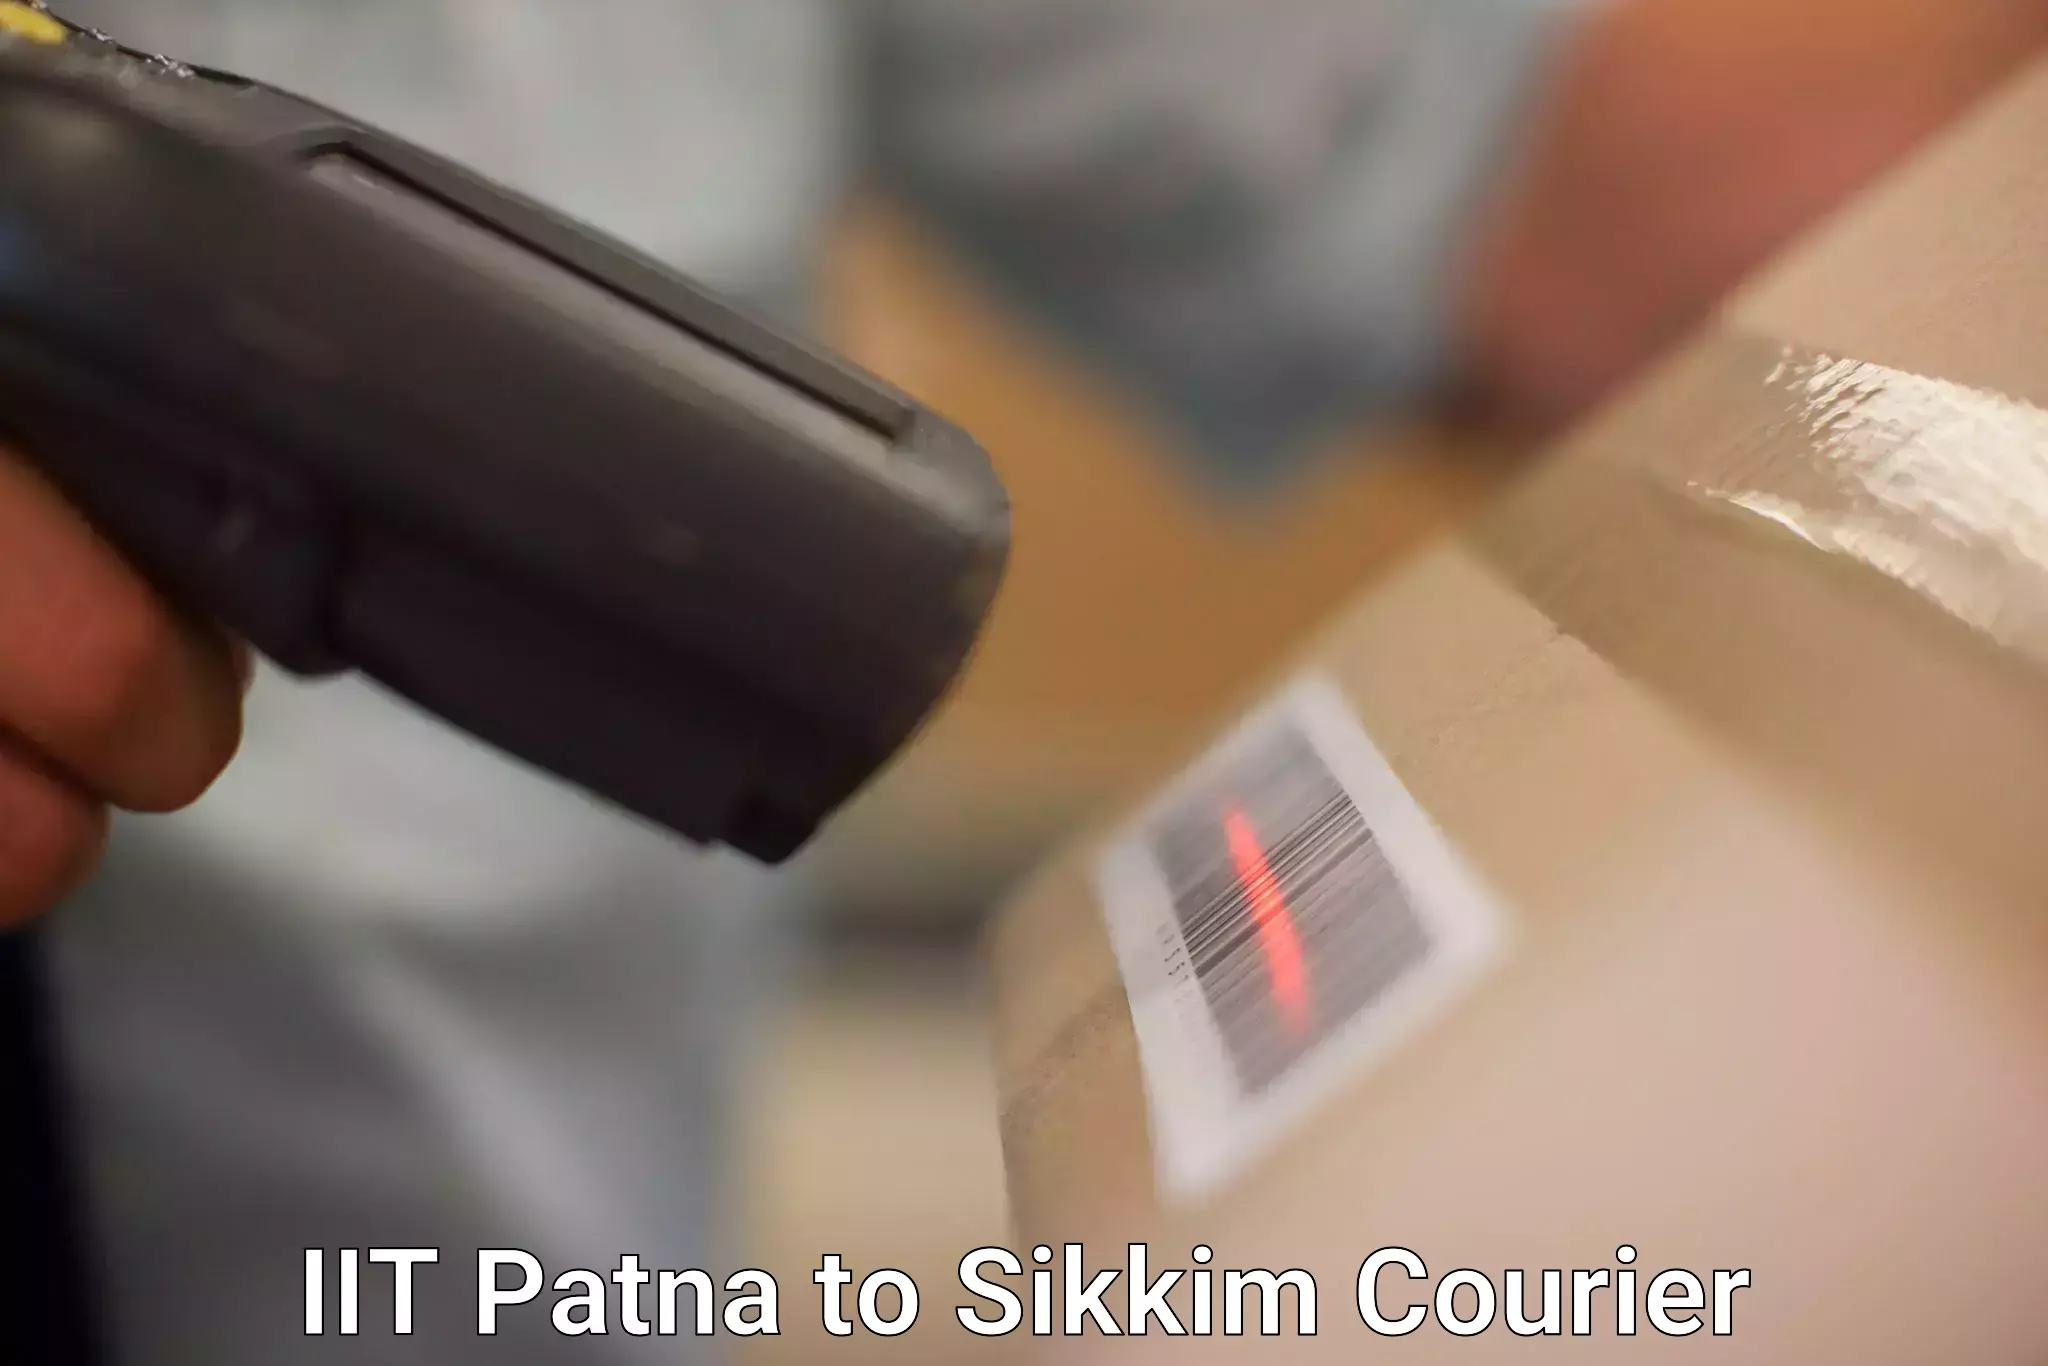 Doorstep delivery service IIT Patna to Sikkim